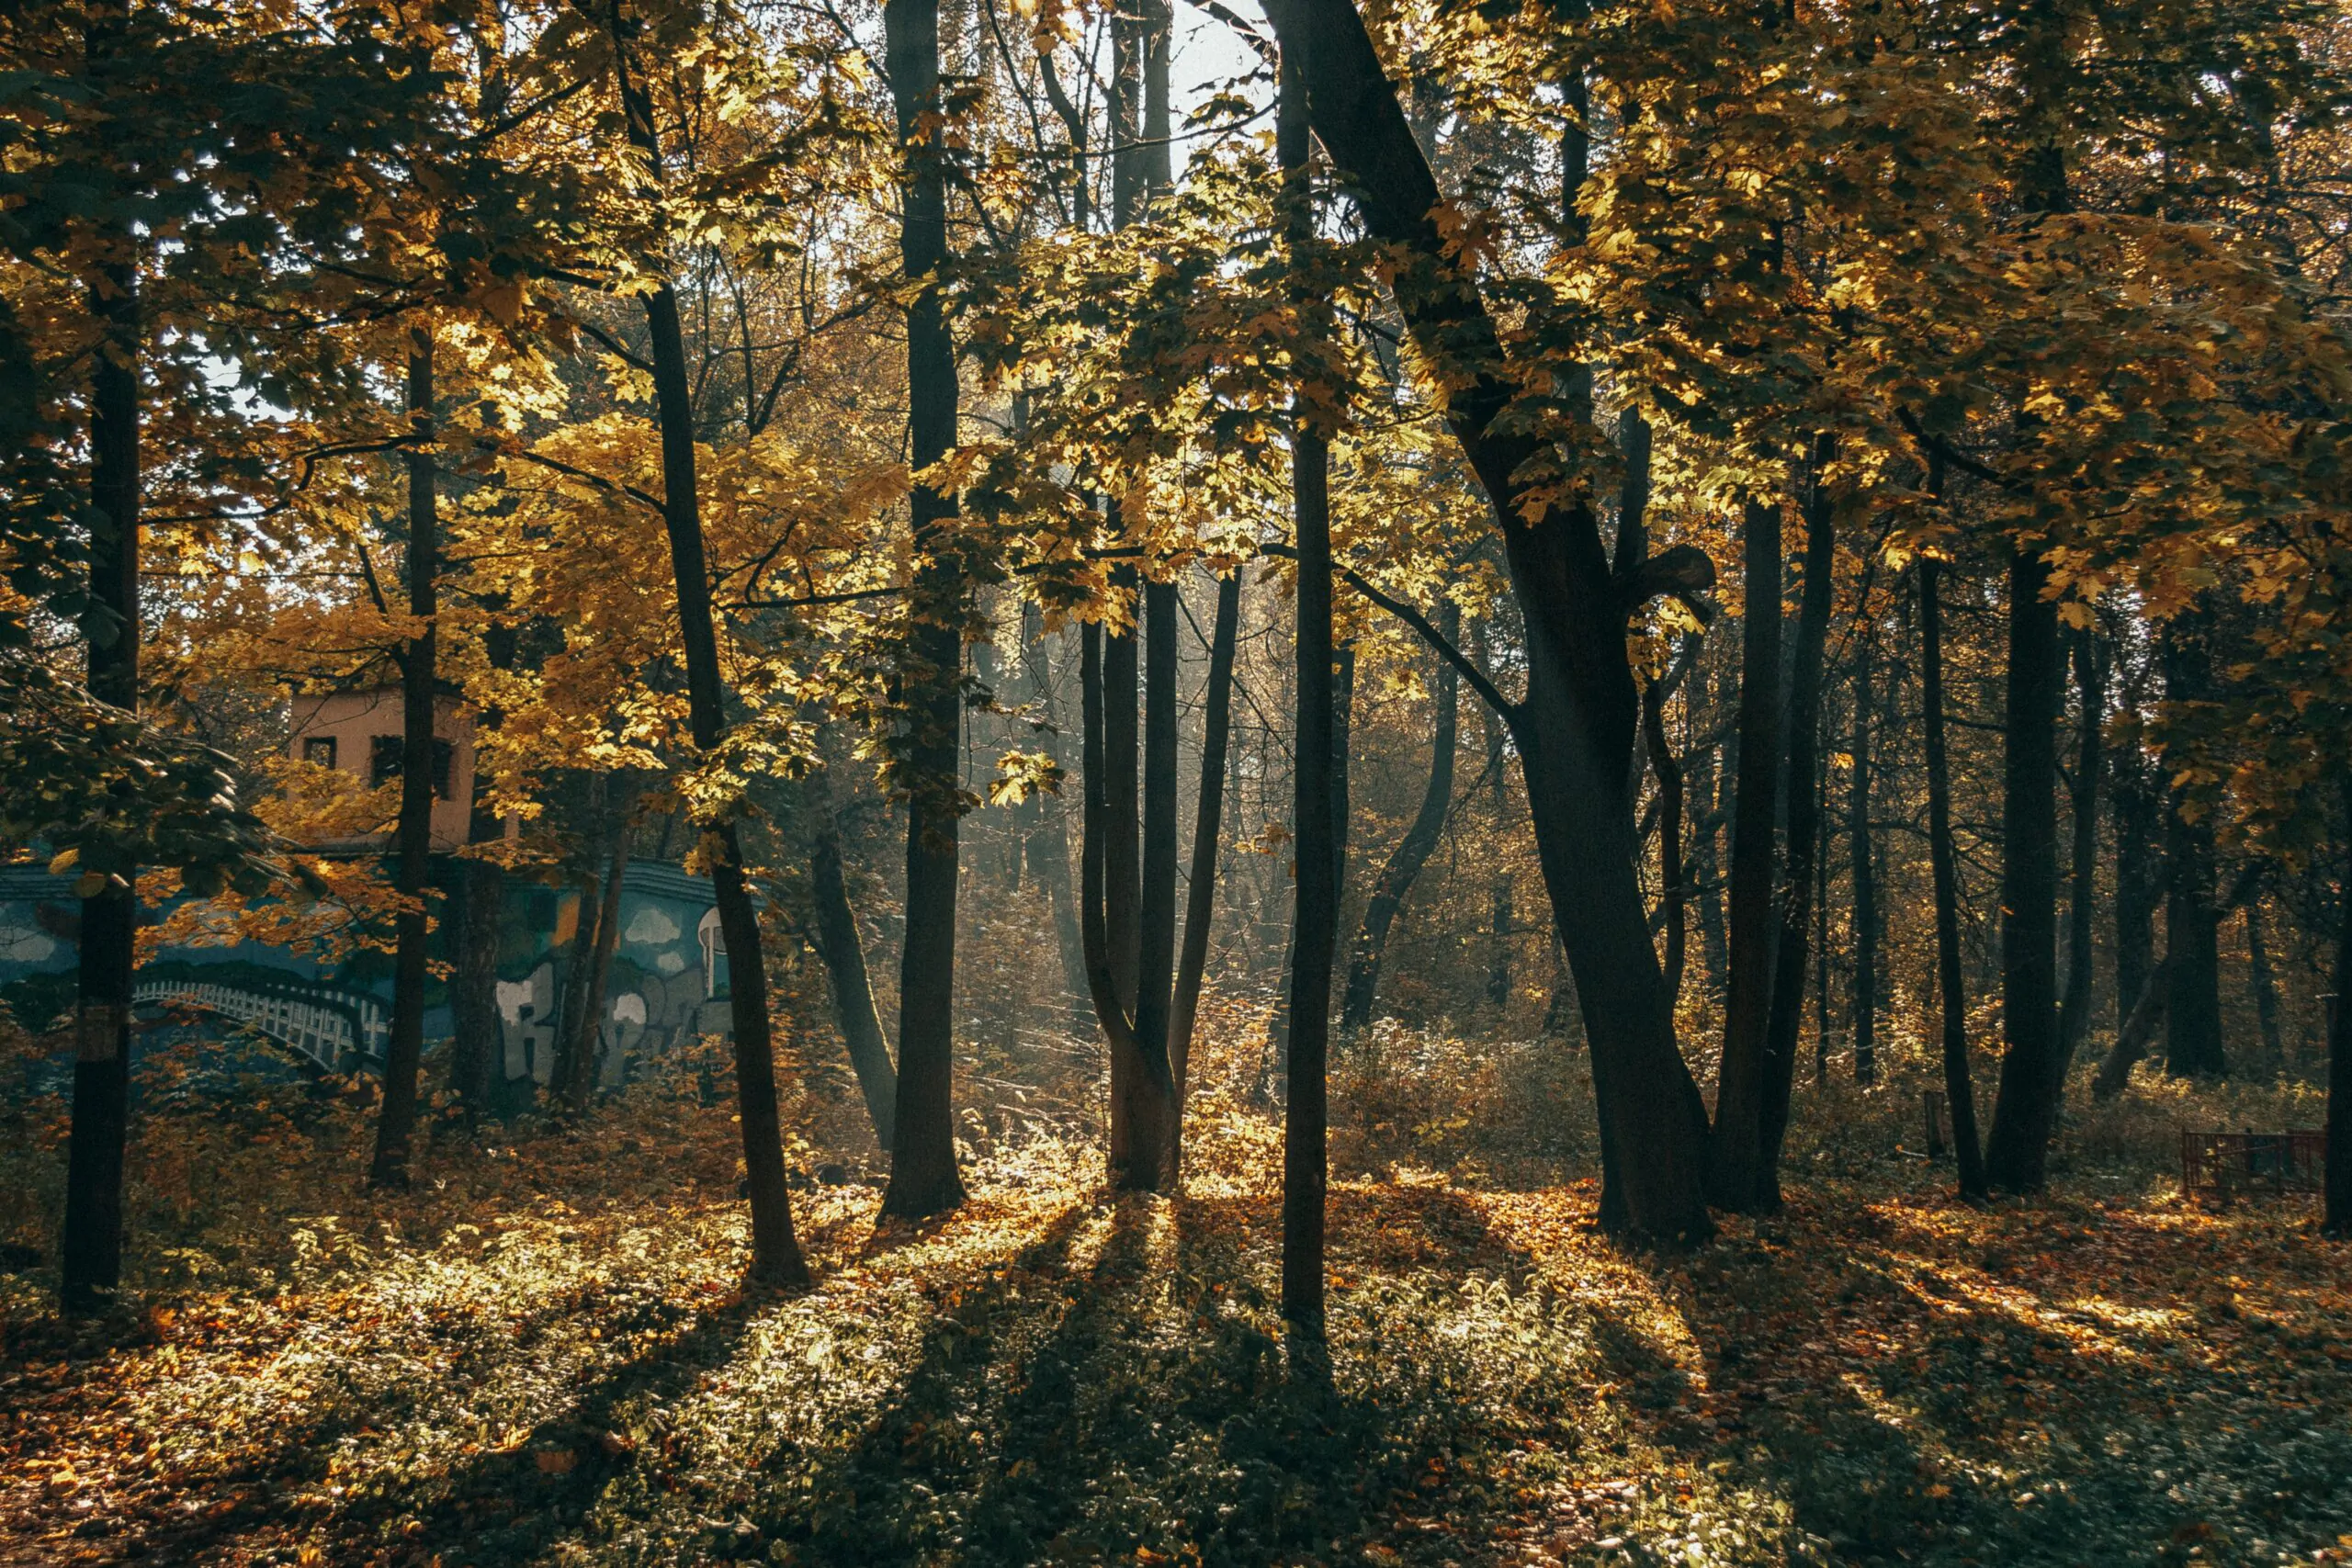 Запреты и ограничения на посещение лесов введены во всех районах Беларуси